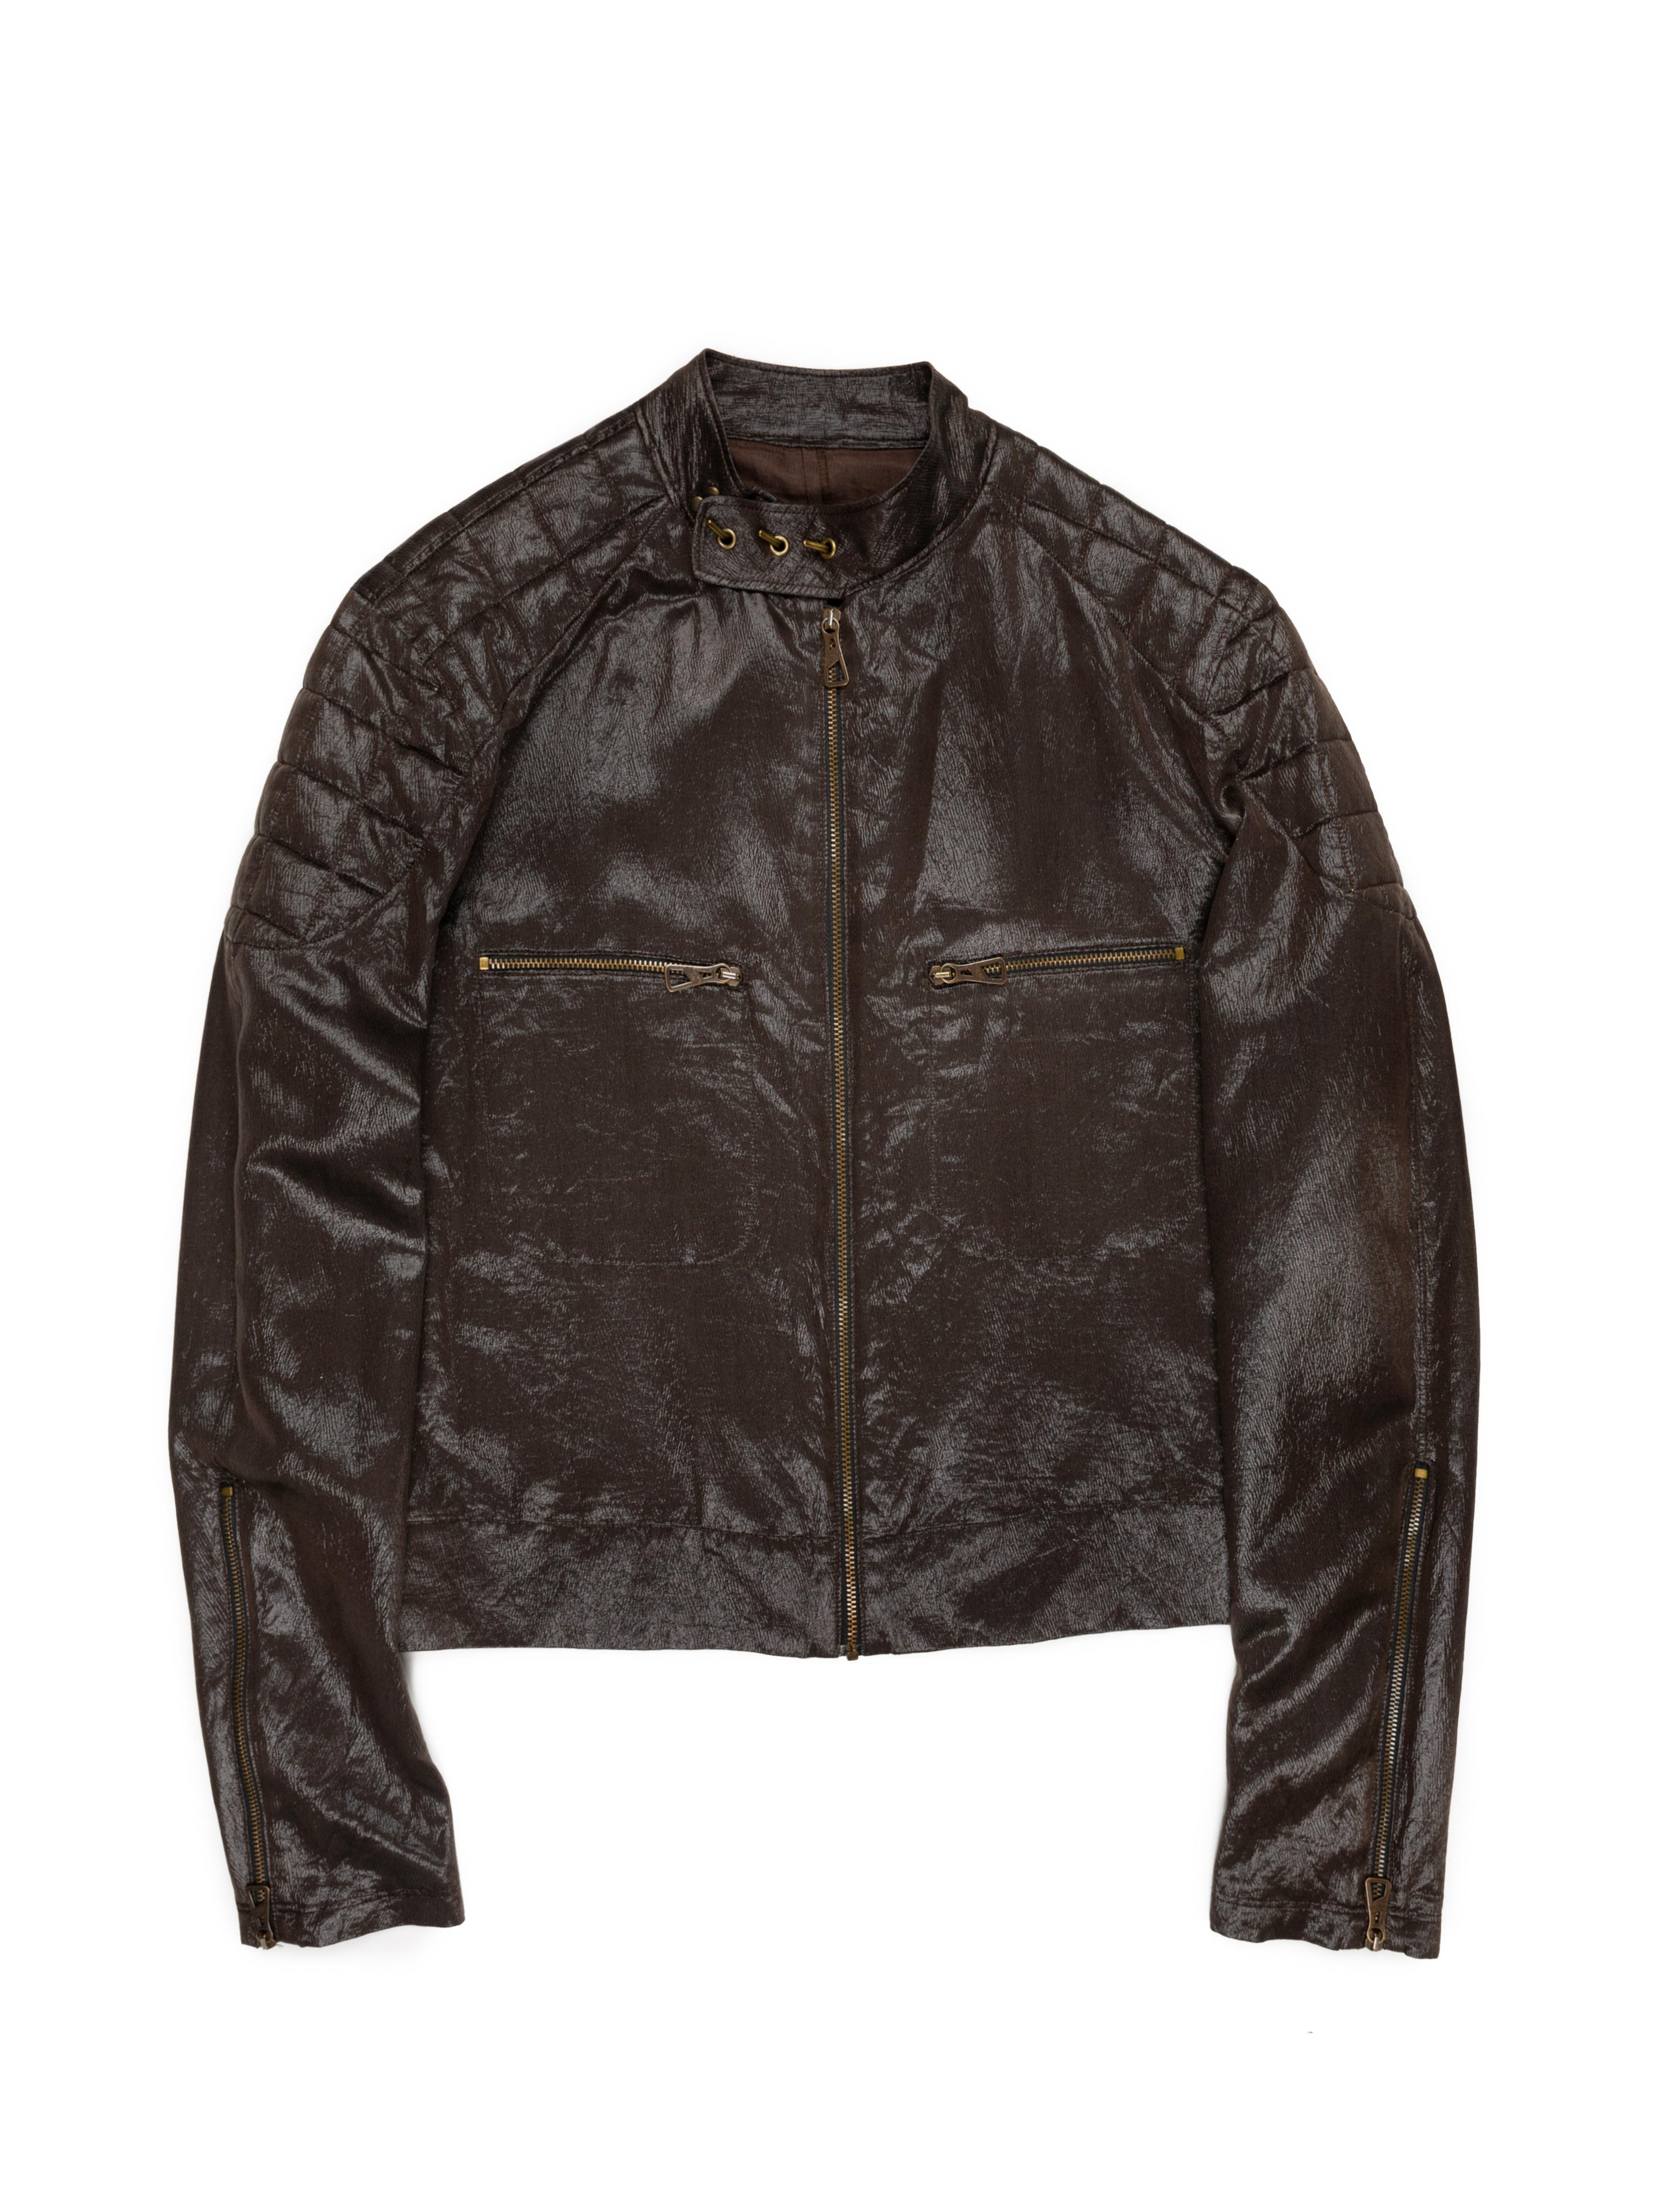 Black Jean Paul Gaultier AW1999 Silk-Blend Moto Jacket